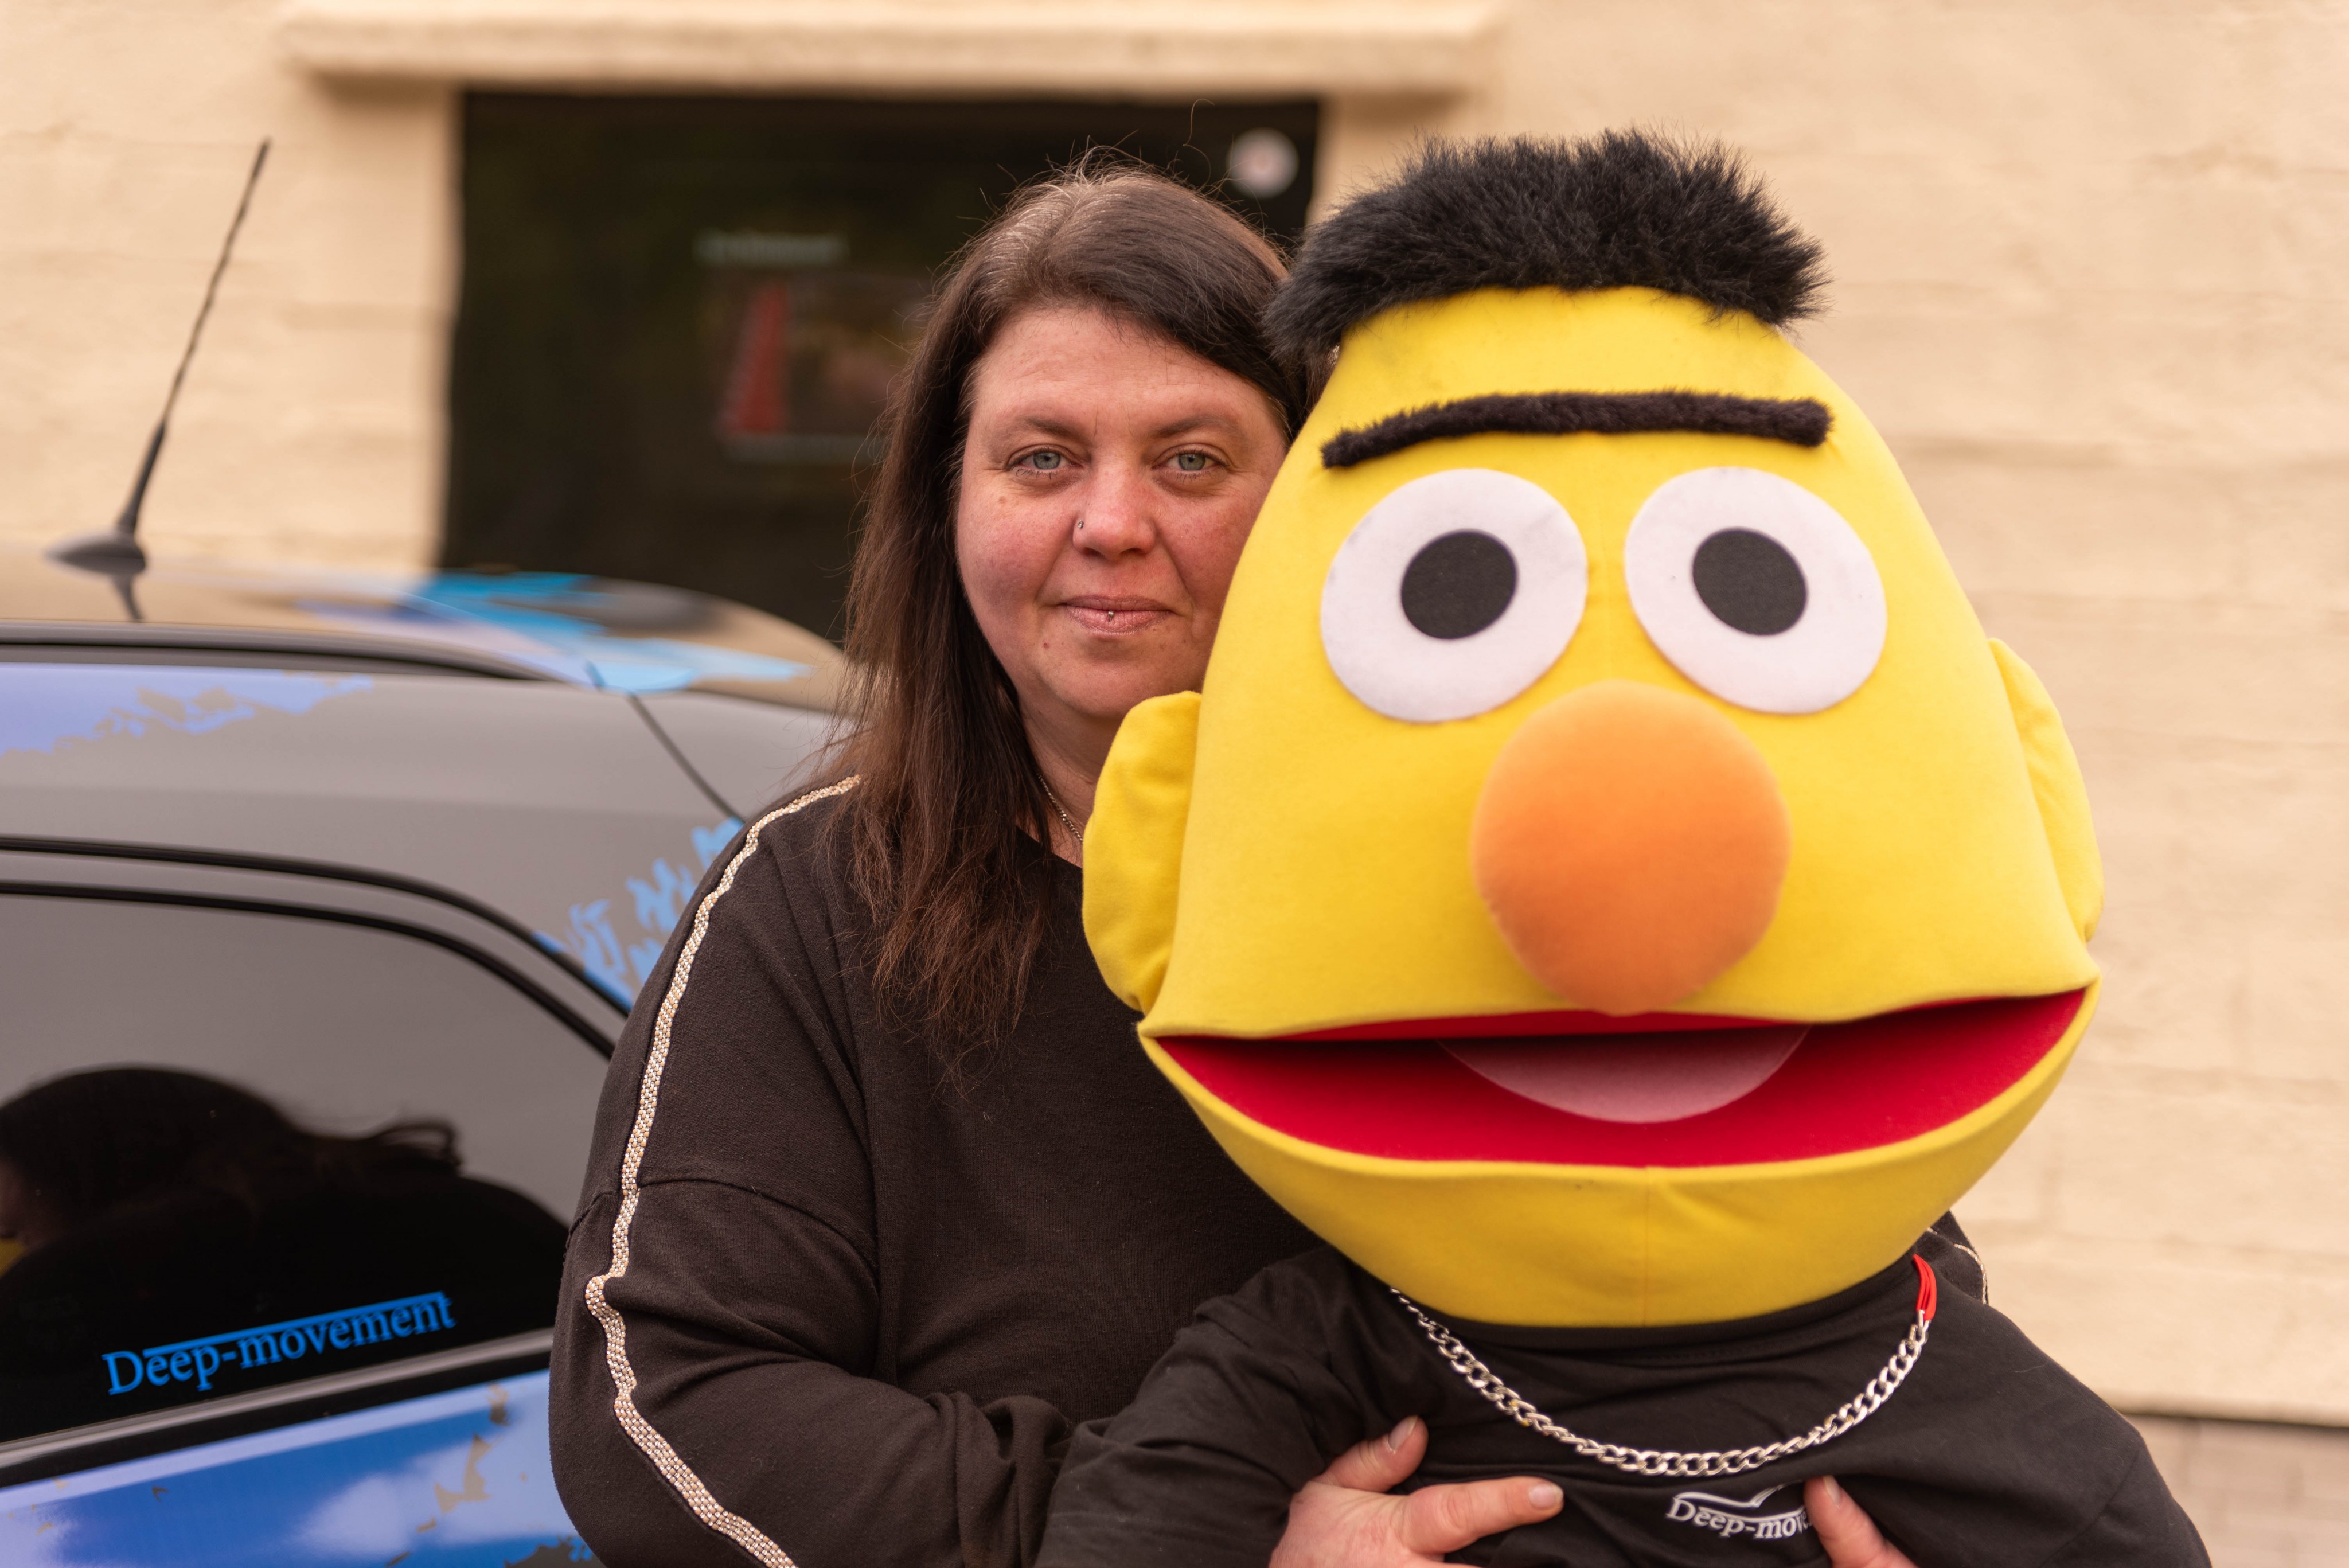 Daniela Giesler ist Fan der Sesamstraße. Das ist auch an ihrem Auto zu erkennen. von Nils Dinkel